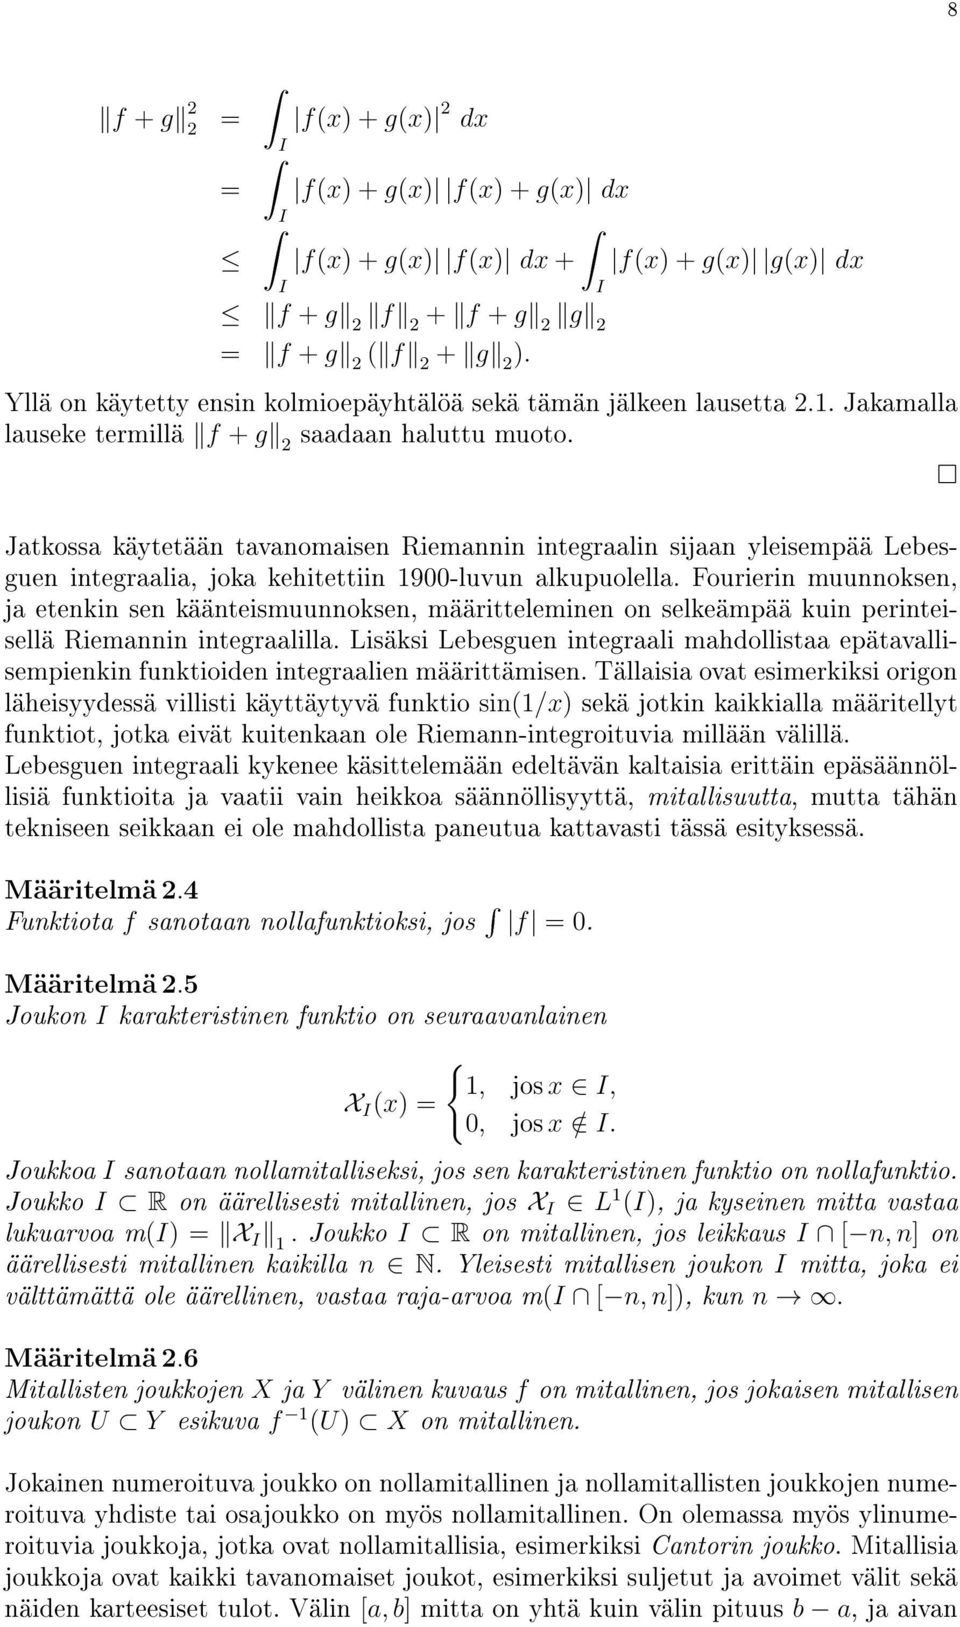 Jatkossa käytetään tavanomaisen Riemannin integraalin sijaan yleisempää Lebesguen integraalia, joka kehitettiin 1900-luvun alkupuolella.